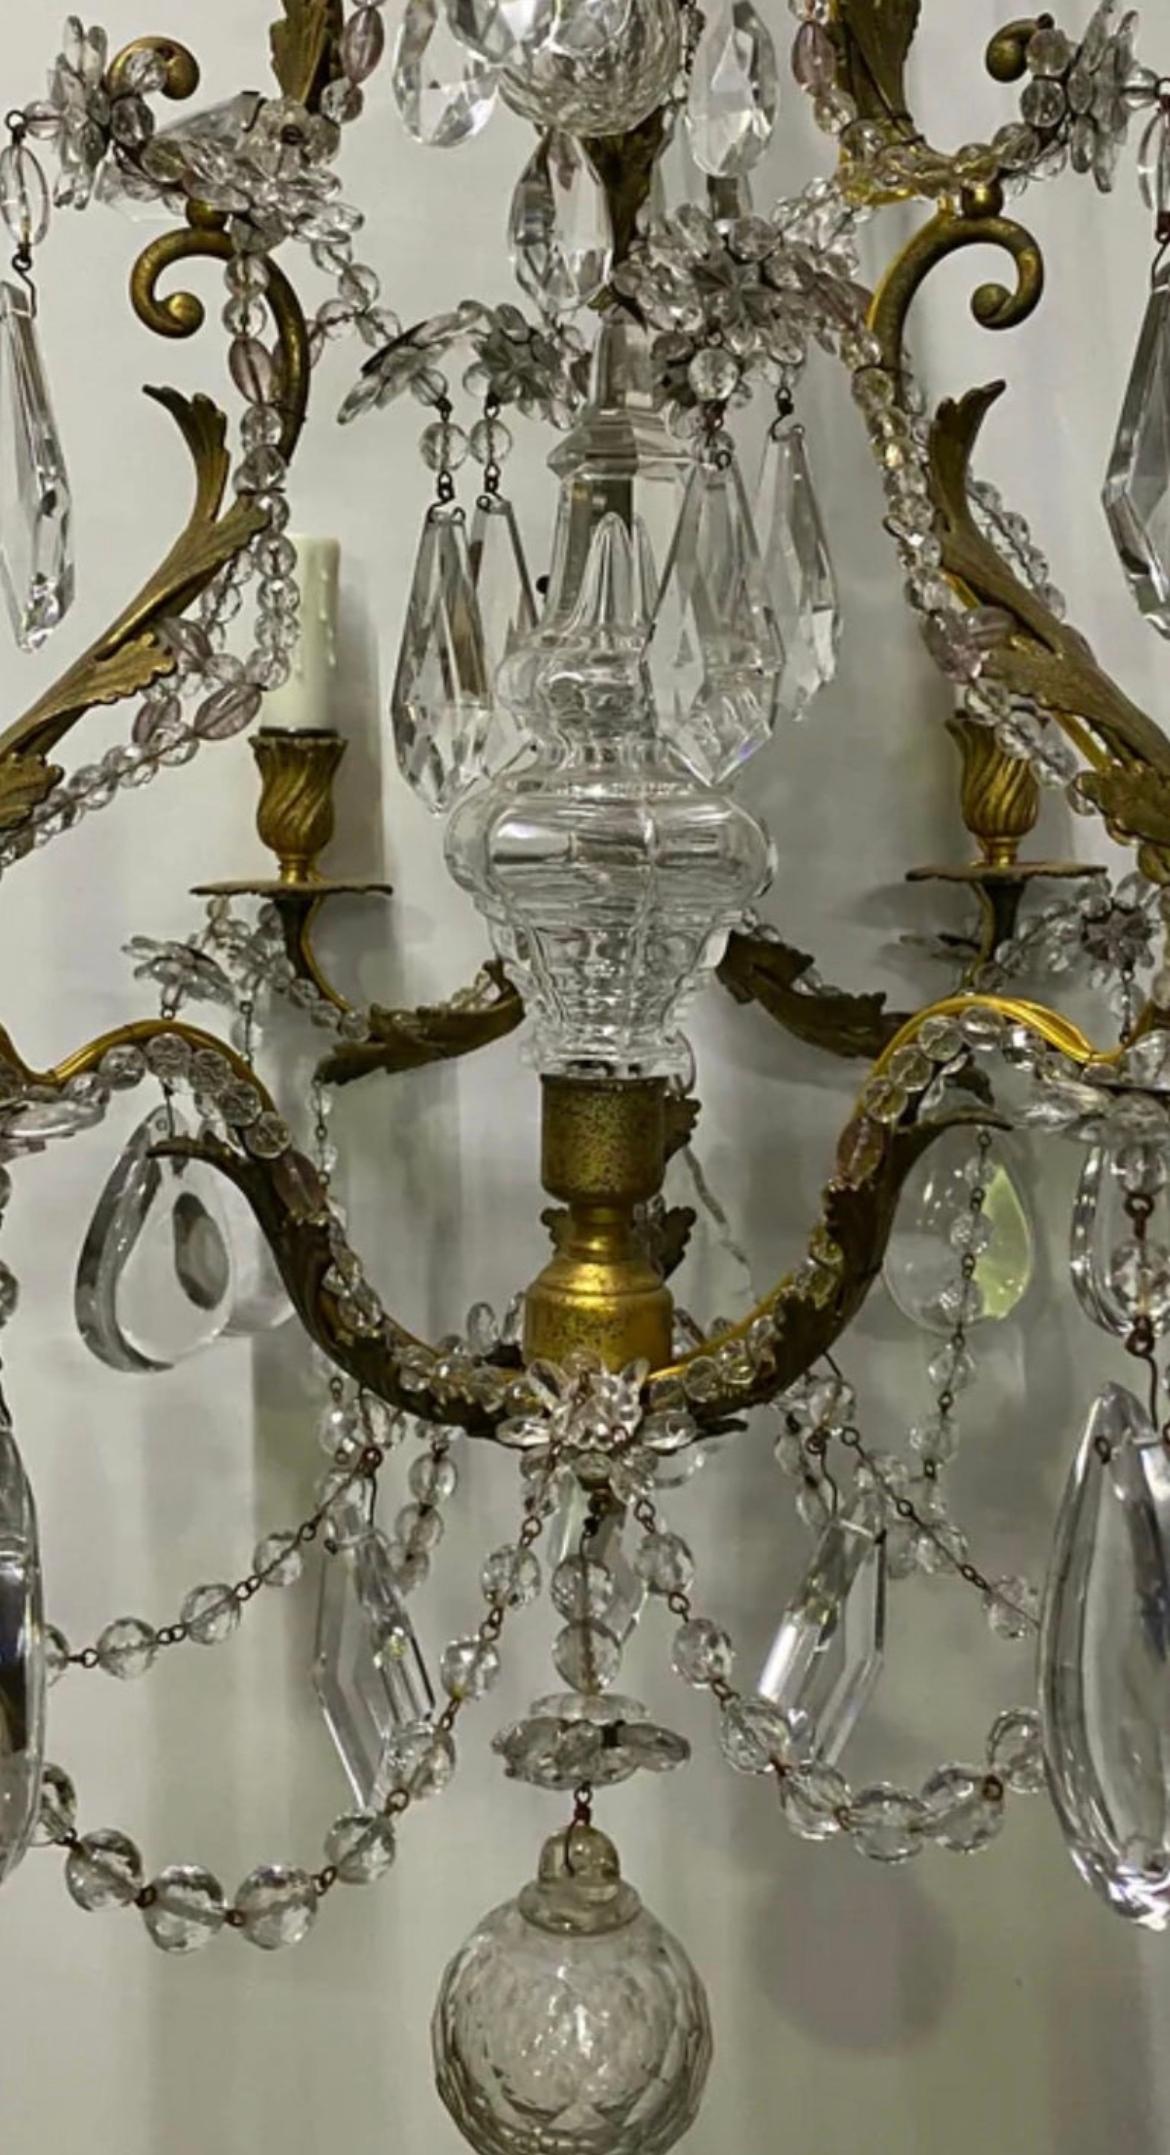 Un magnifique lustre à 6 bras en cristal italien en laiton massif qui est câblé, nettoyé et prêt à être installé dans une nouvelle maison. Cette pièce respire le luxe et le raffinement. Nous pensons qu'il s'agit d'une pièce de base complète et